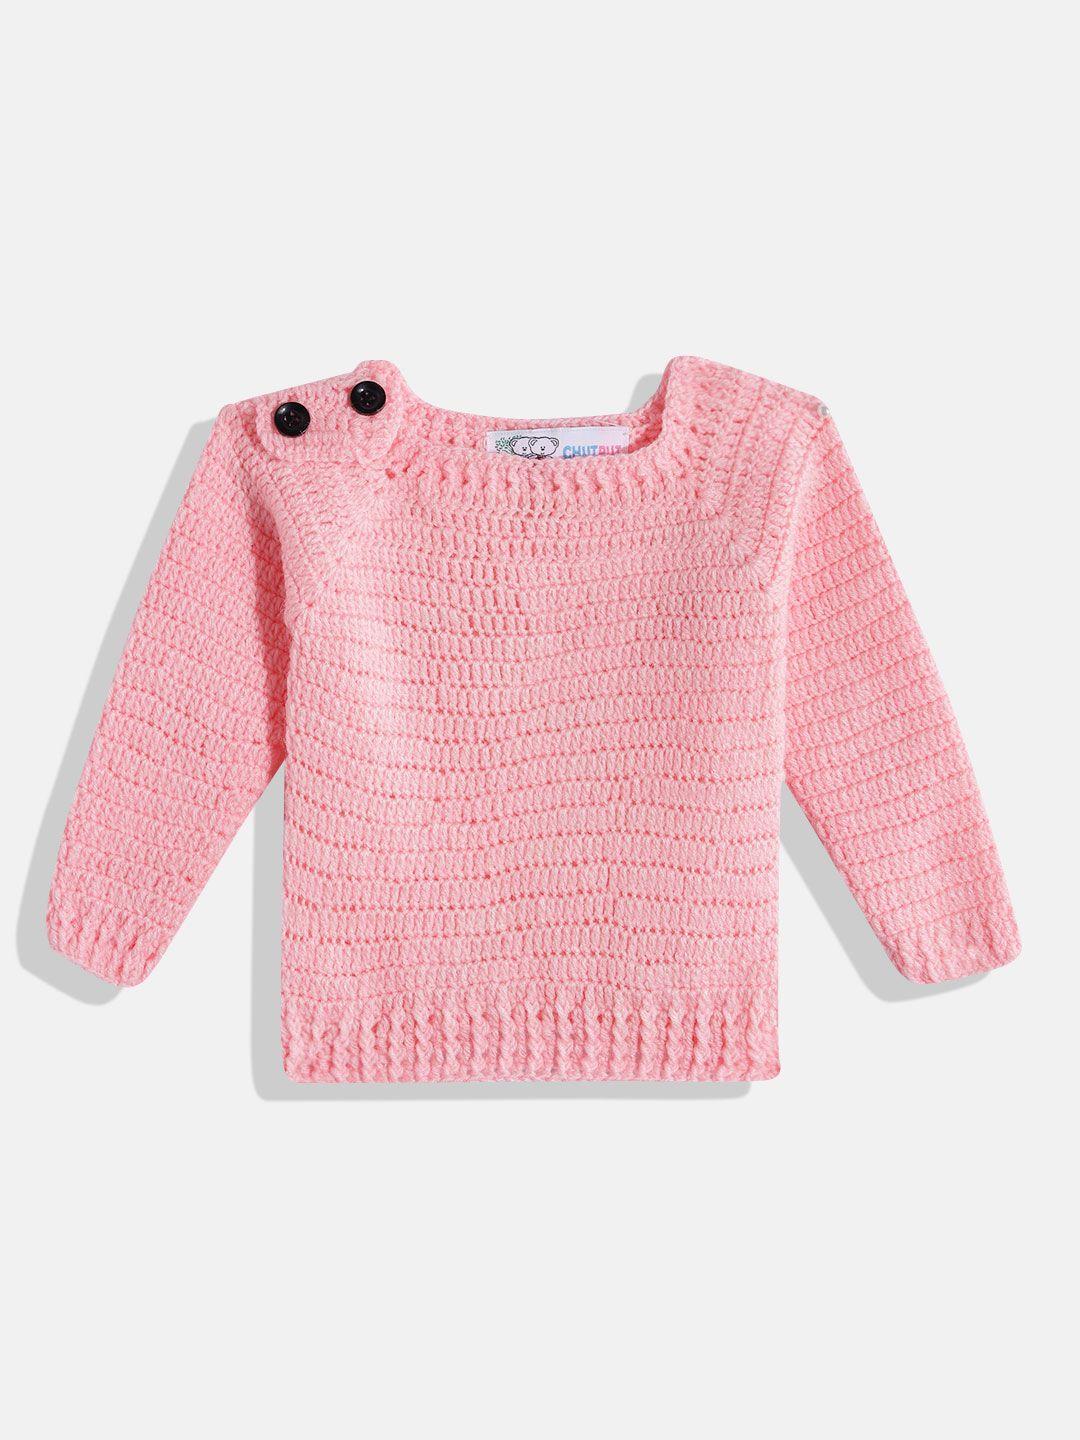 chutput-kids-crochet-woollen-pullover